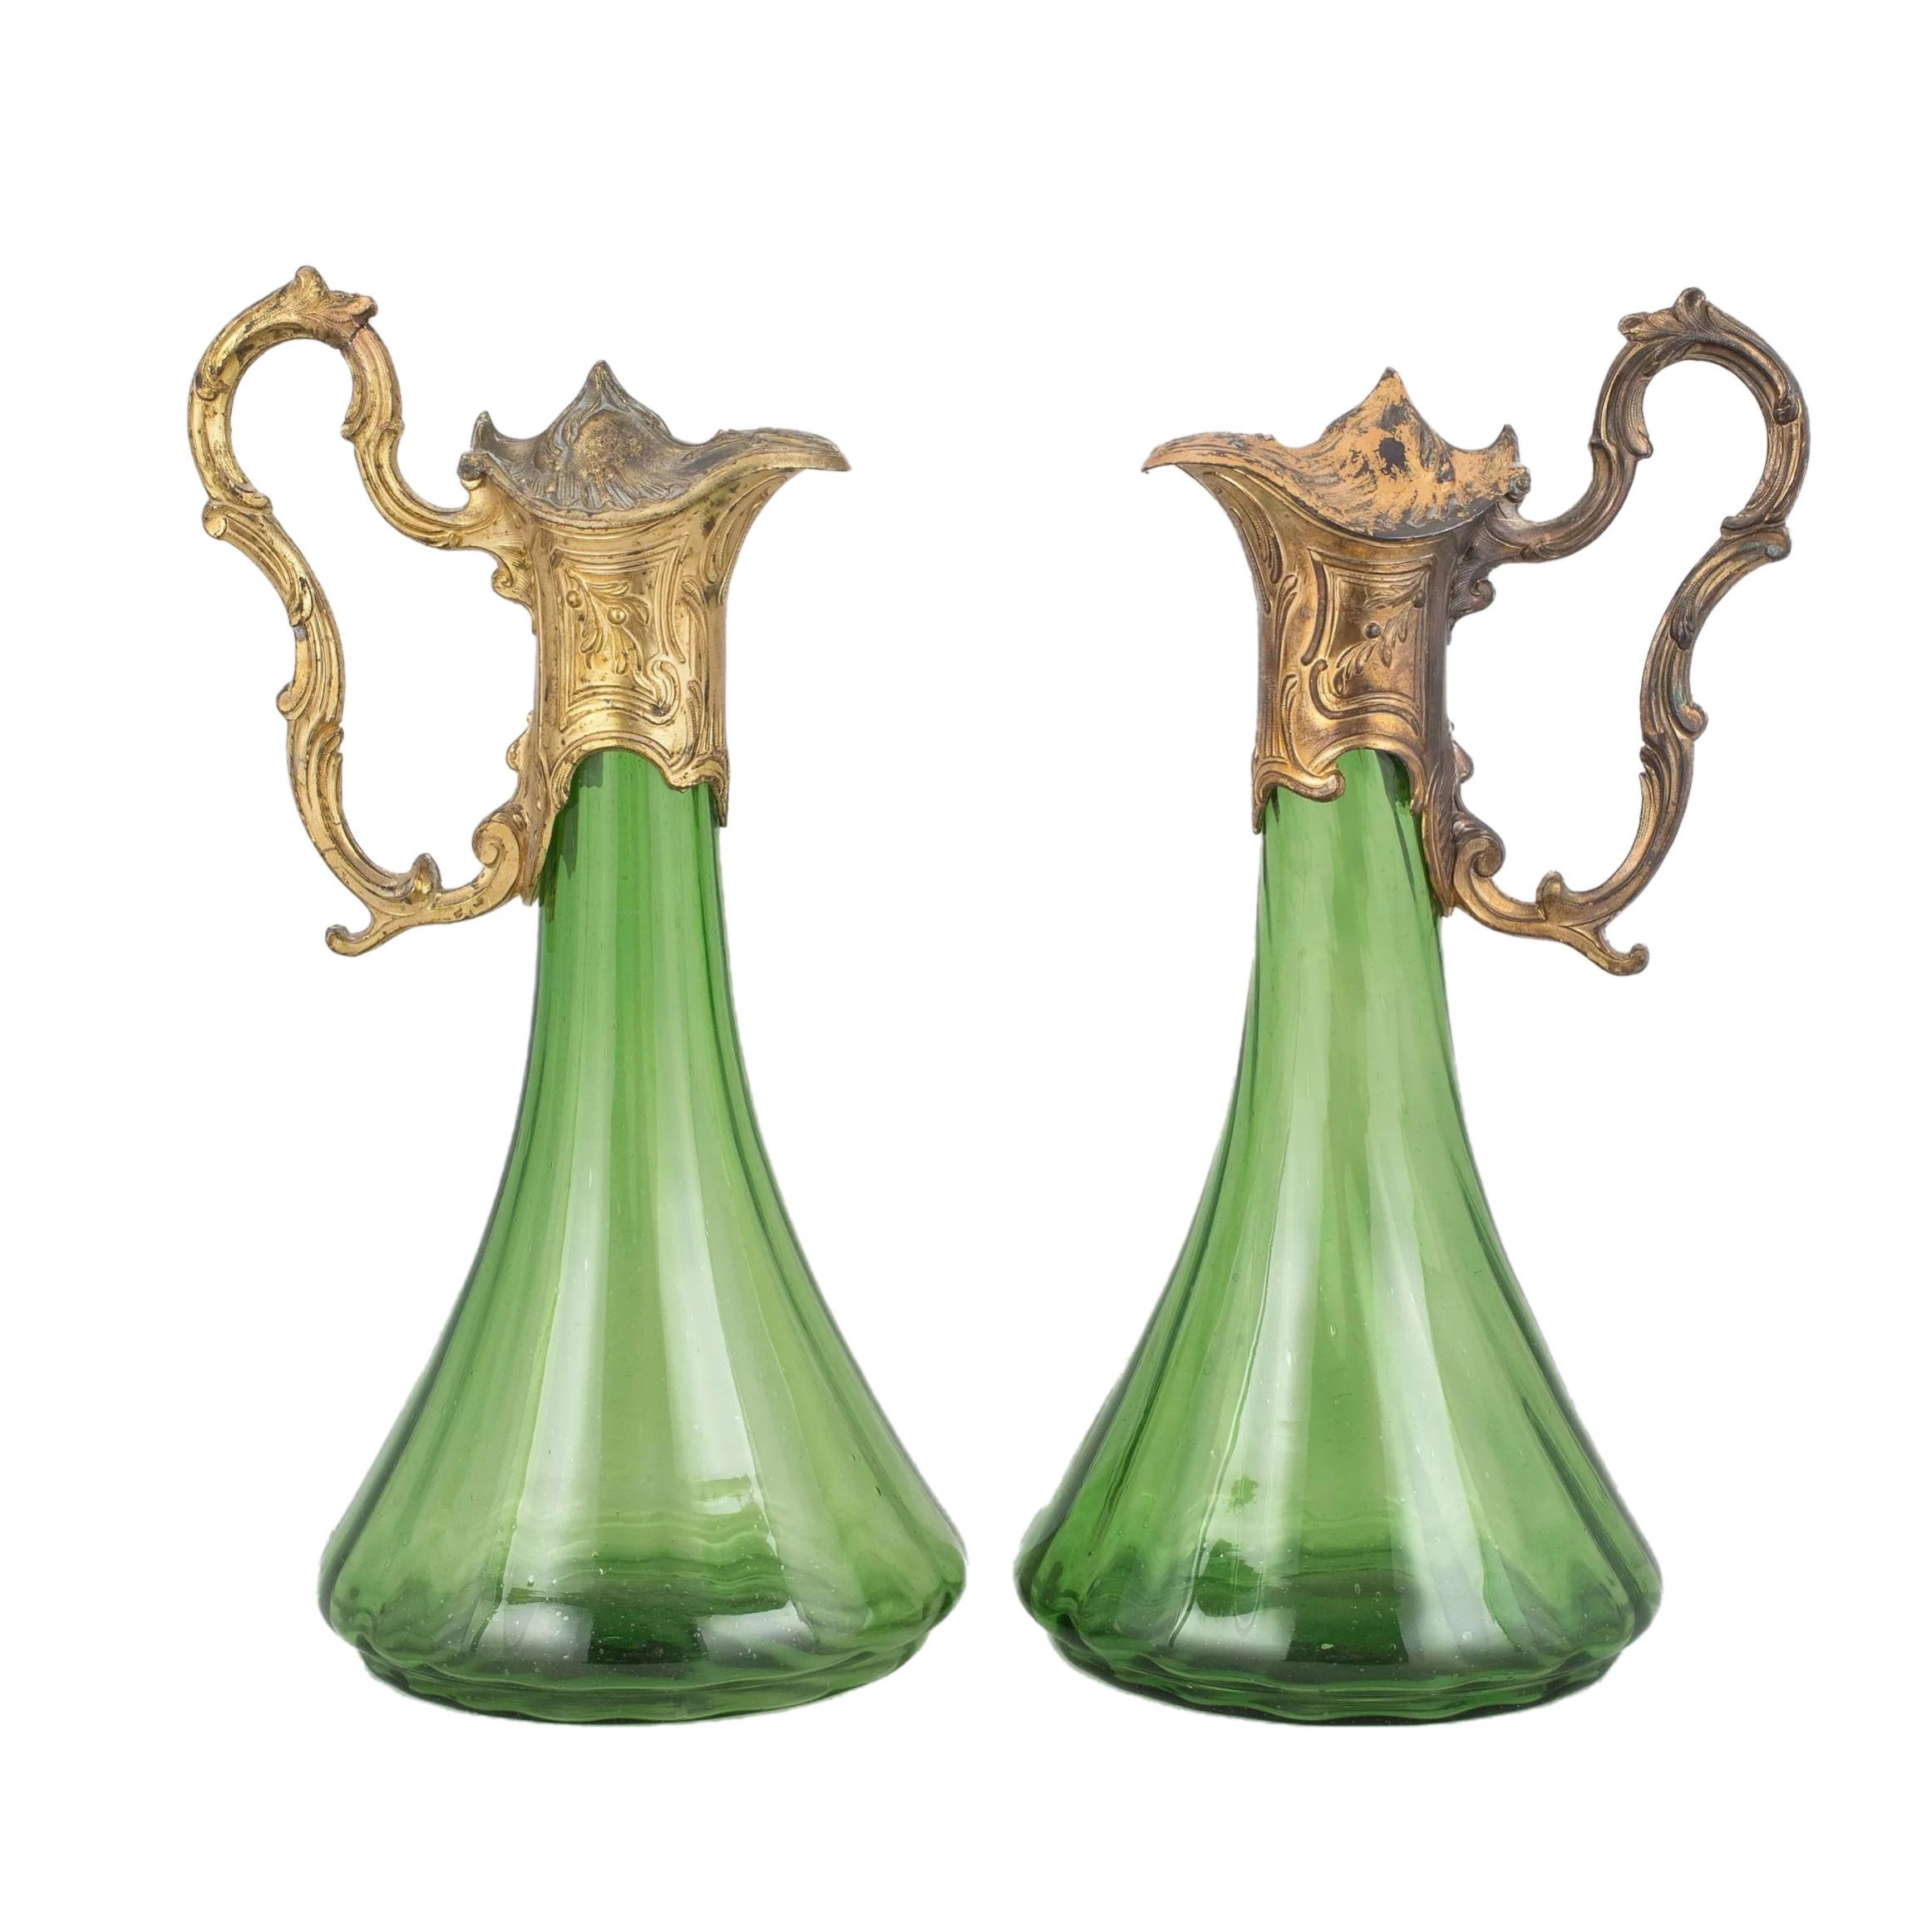 A-pair-of-Art-Nouveau-jugs-